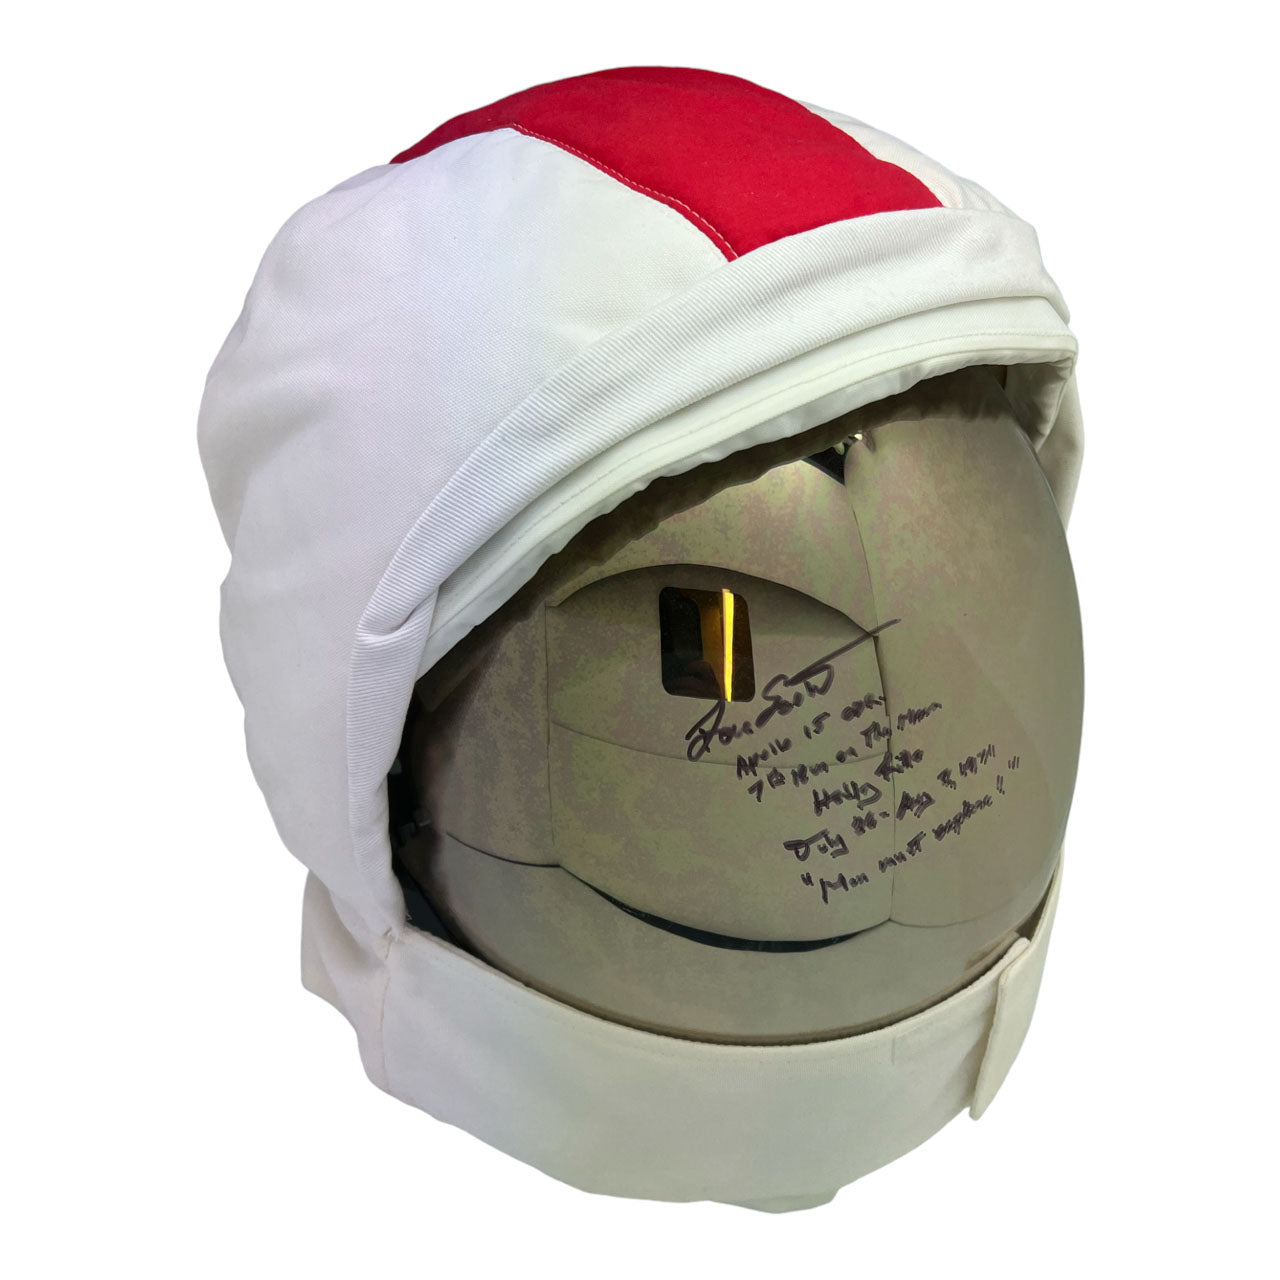 Dave Scott signed A7L 1:1 Apollo LEVA helmet replica